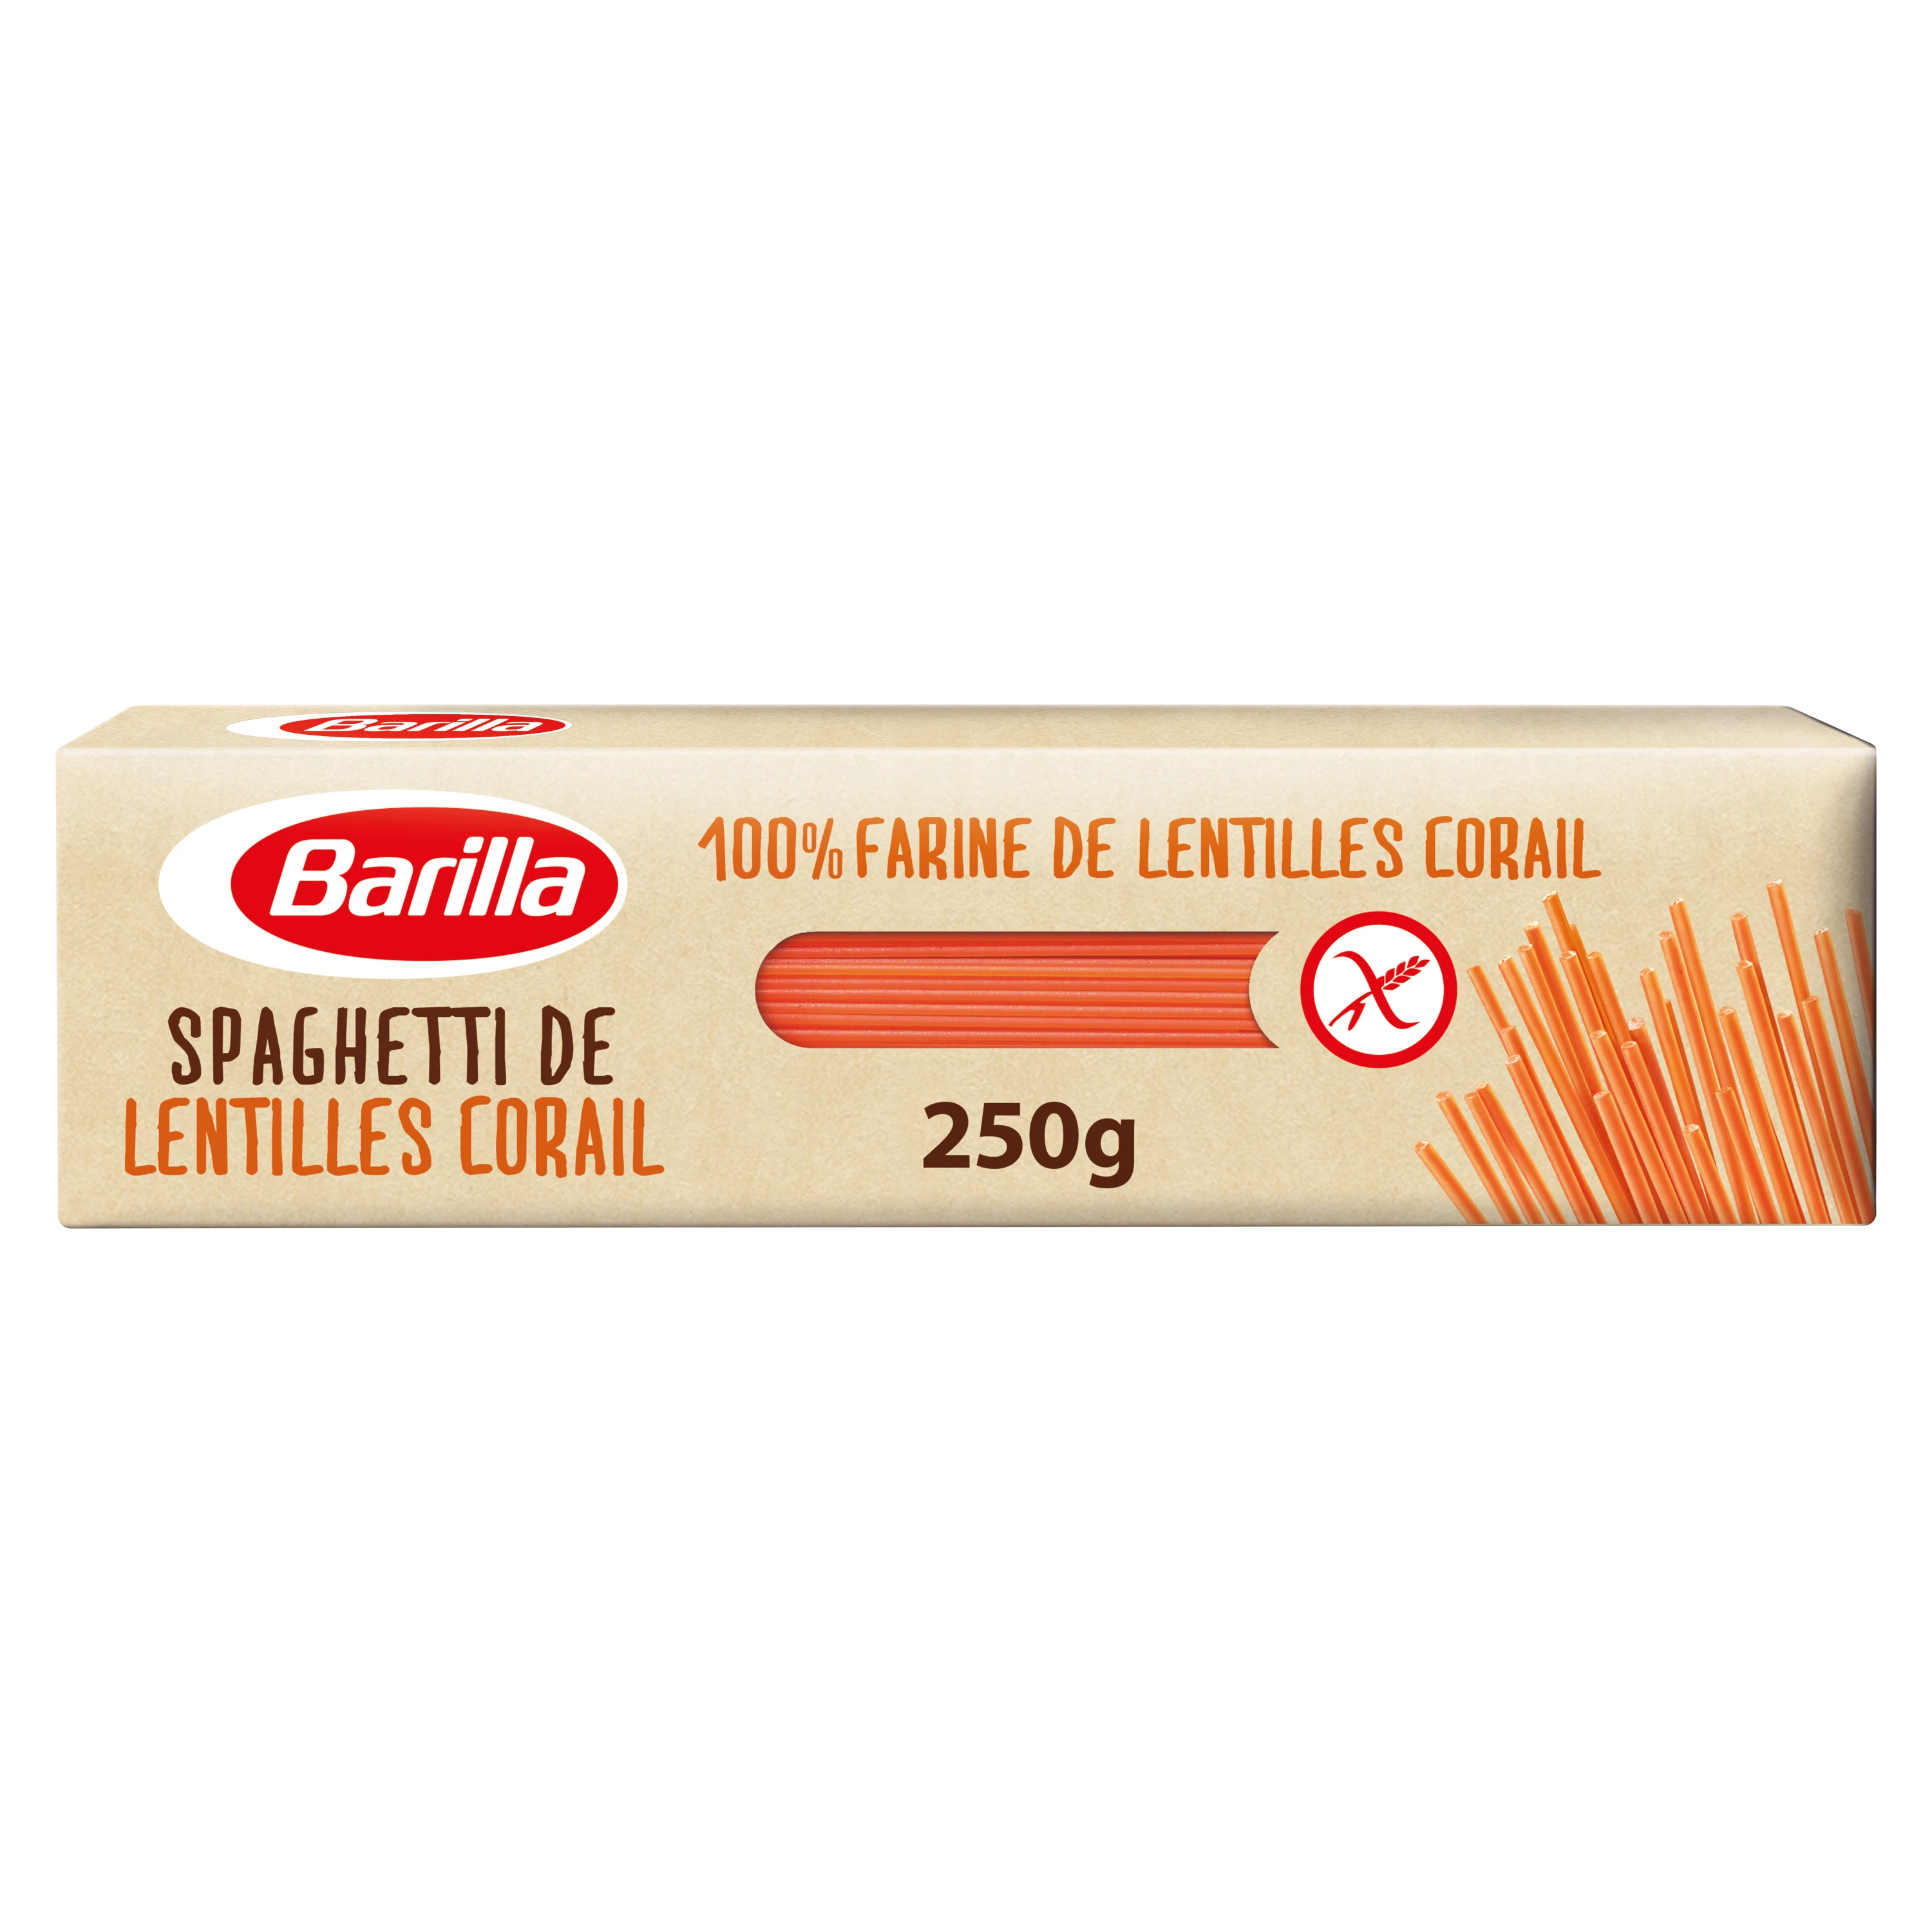 Gluten-free coral lentil spaghetti, 250g - BARILLA